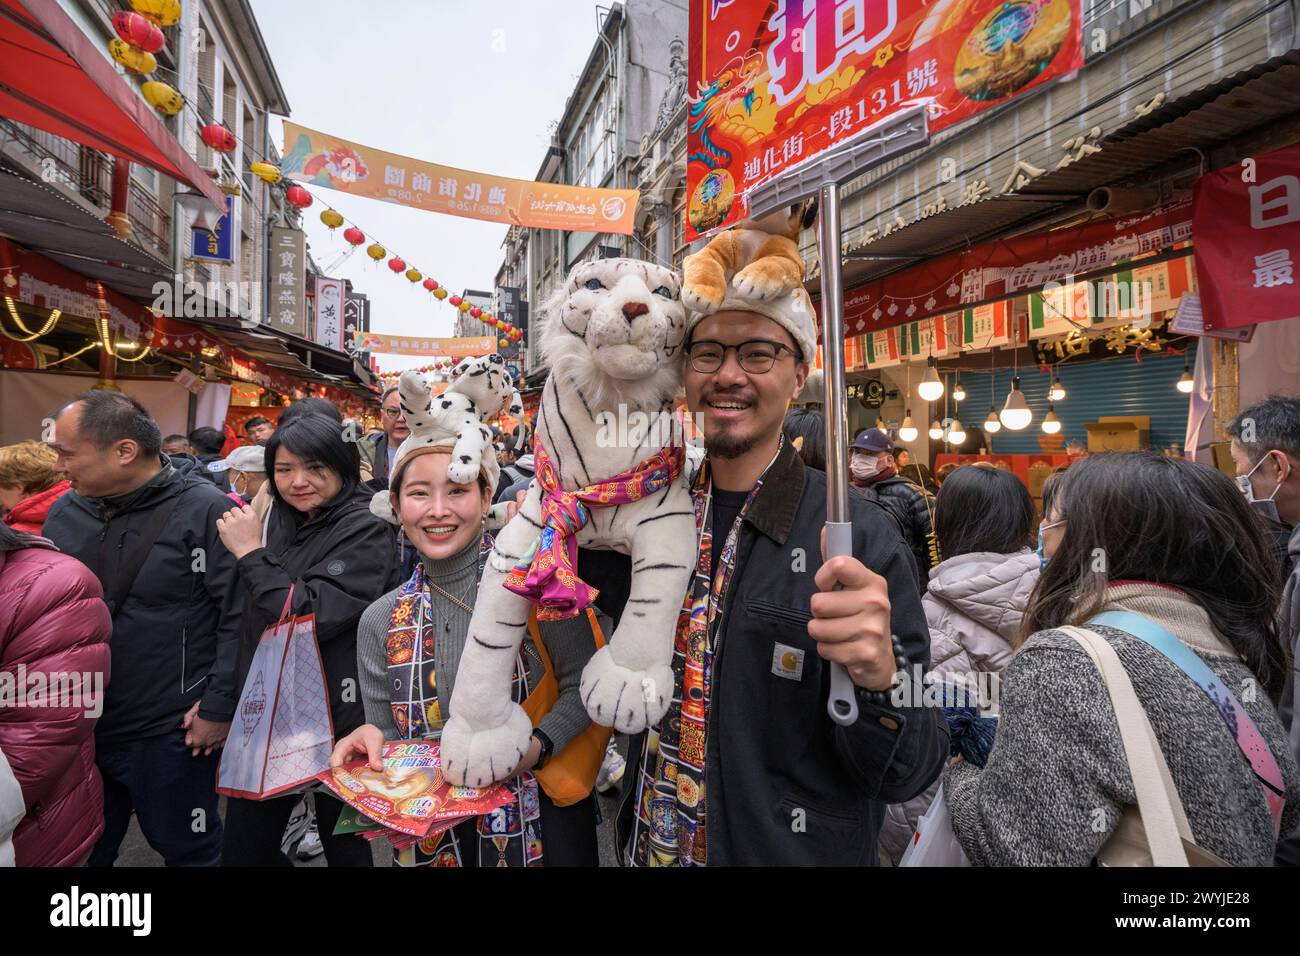 Ein glückliches Paar posiert mit Plüschtigerspielzeug während einer festlichen Veranstaltung in einer geschmückten Straße während des chinesischen Neujahrs. Stockfoto